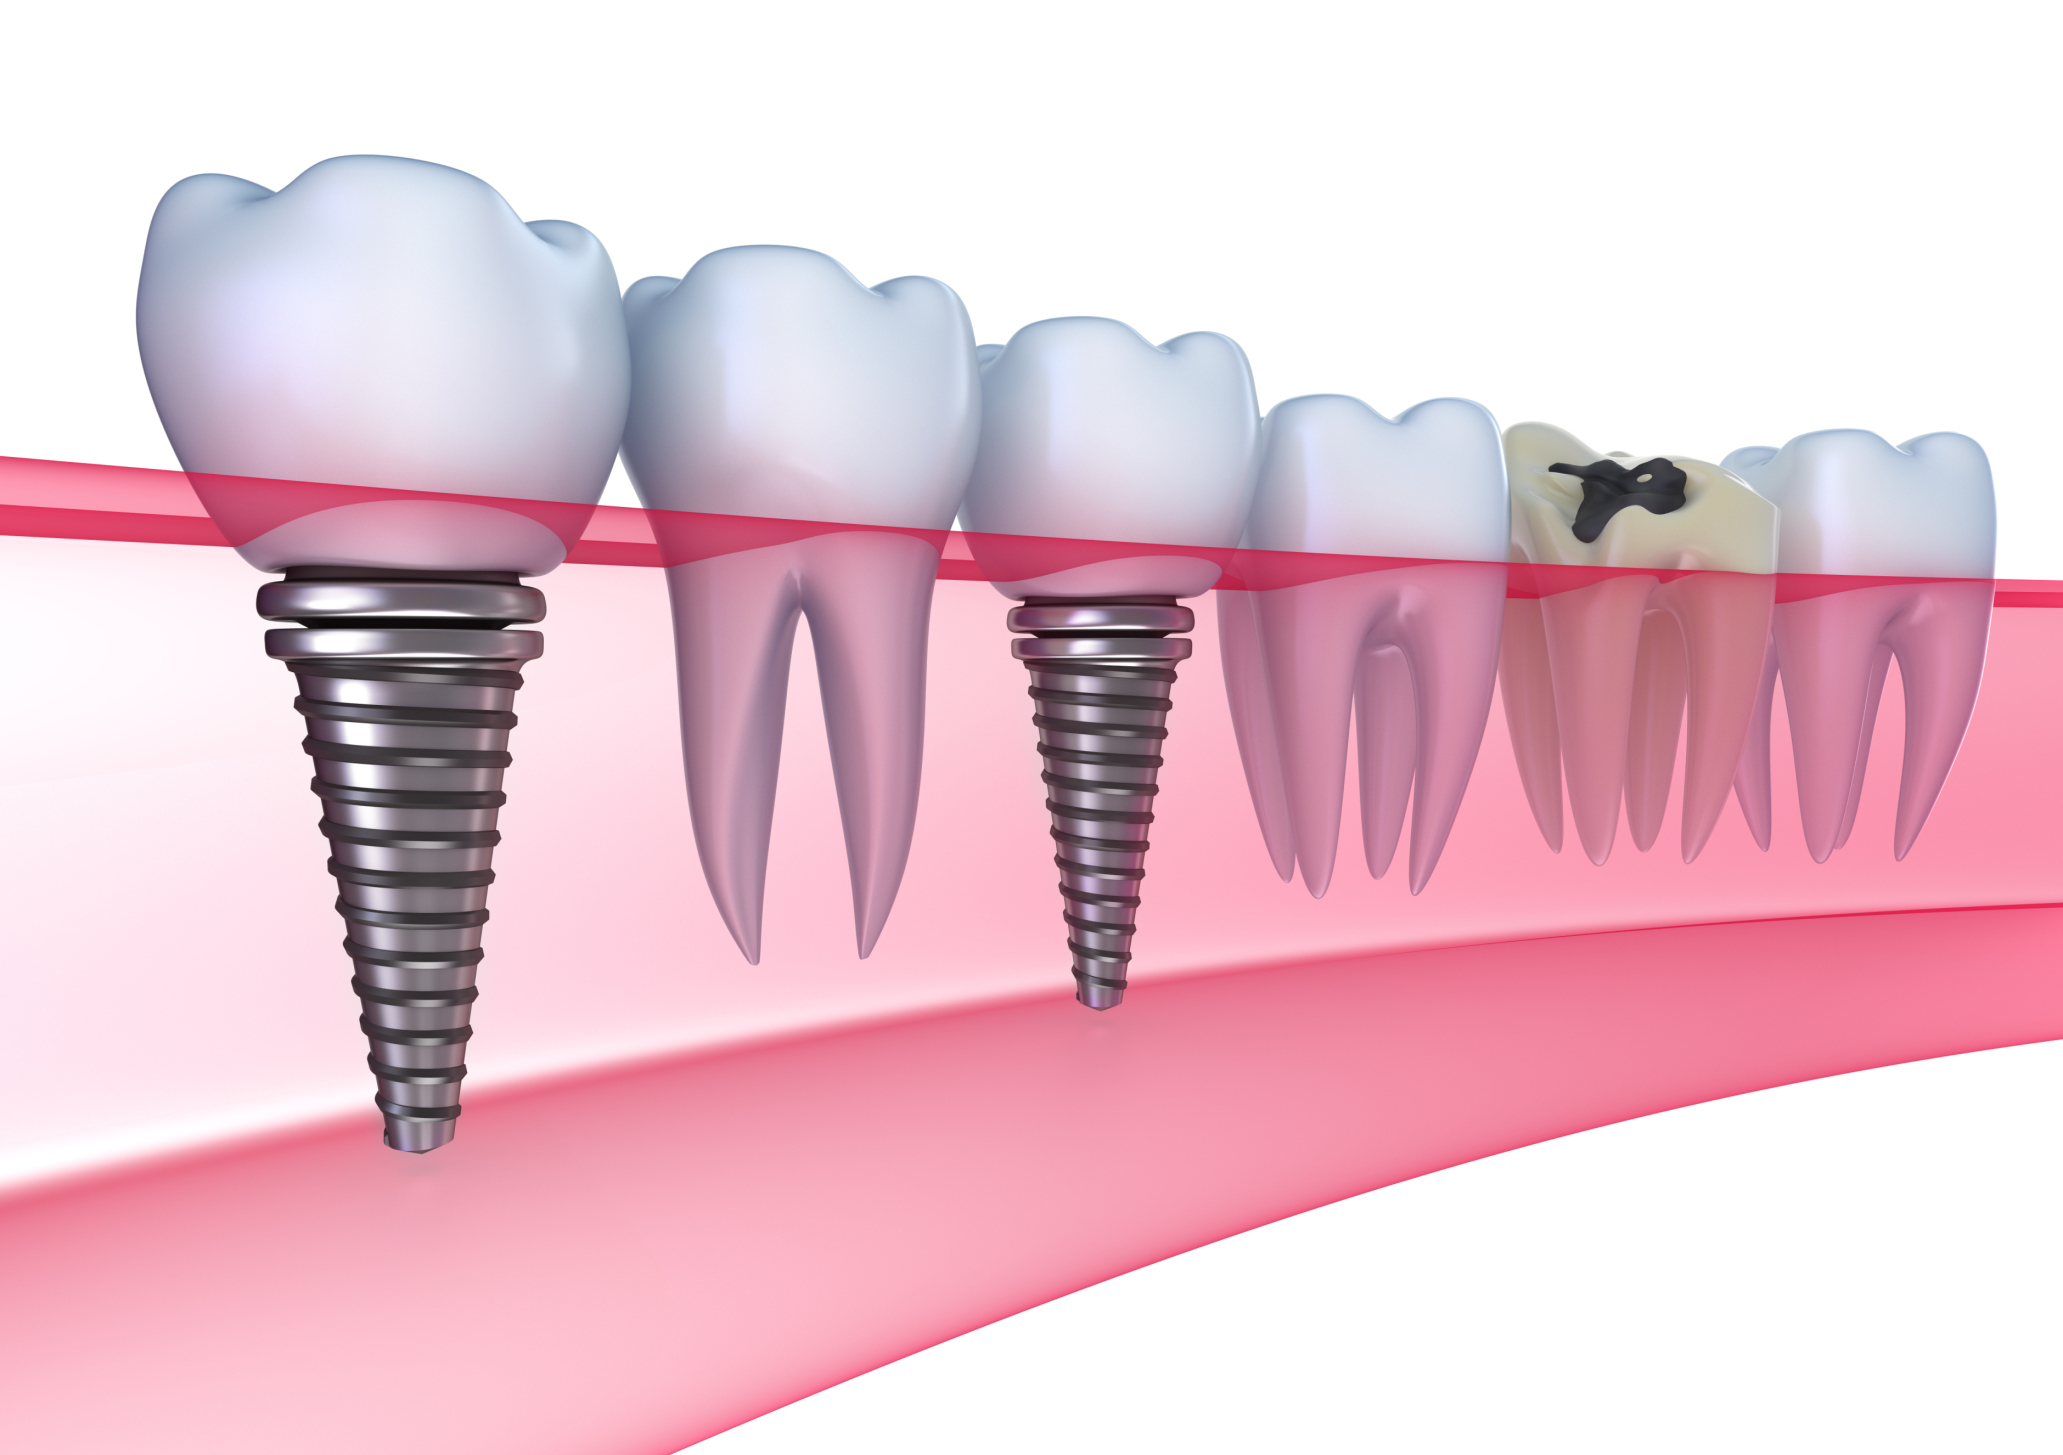 Cấy ghép Implant khi bị mất một răng